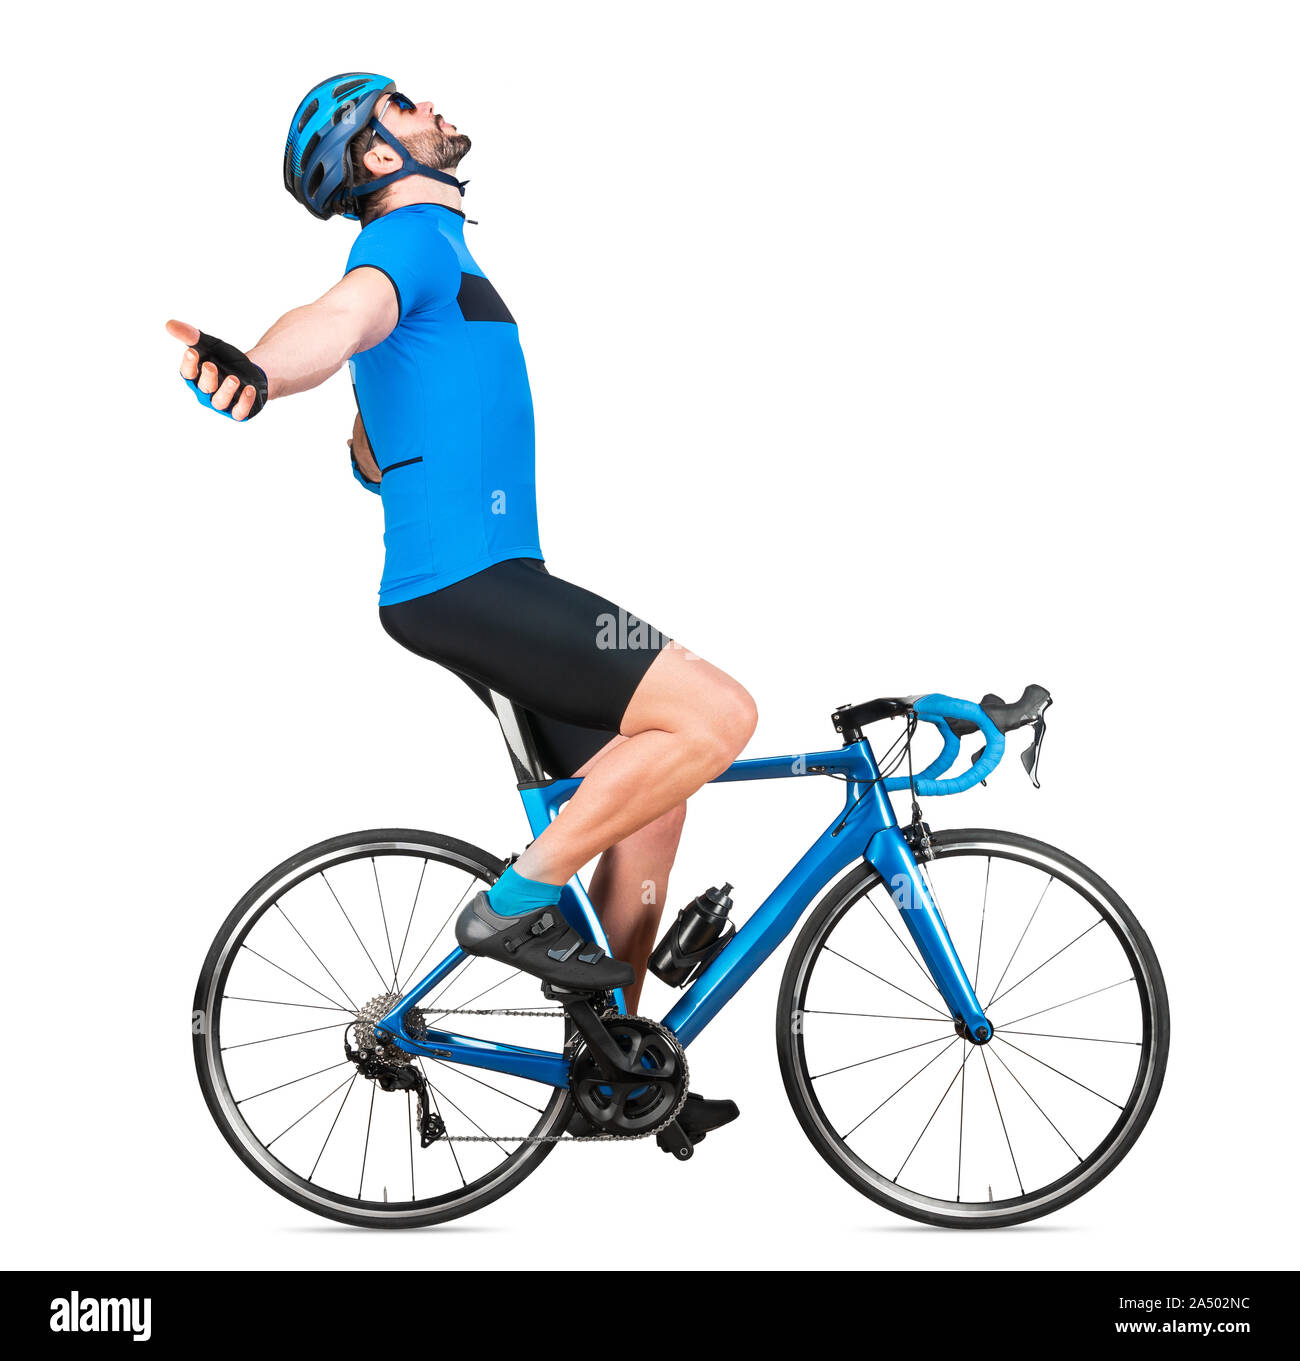 Professional bicicletta road racing ciclista racer in blu sport jersey sulla luce di carbonio ciclo di gara festa celebra la vittoria. sport allenamento c Foto Stock